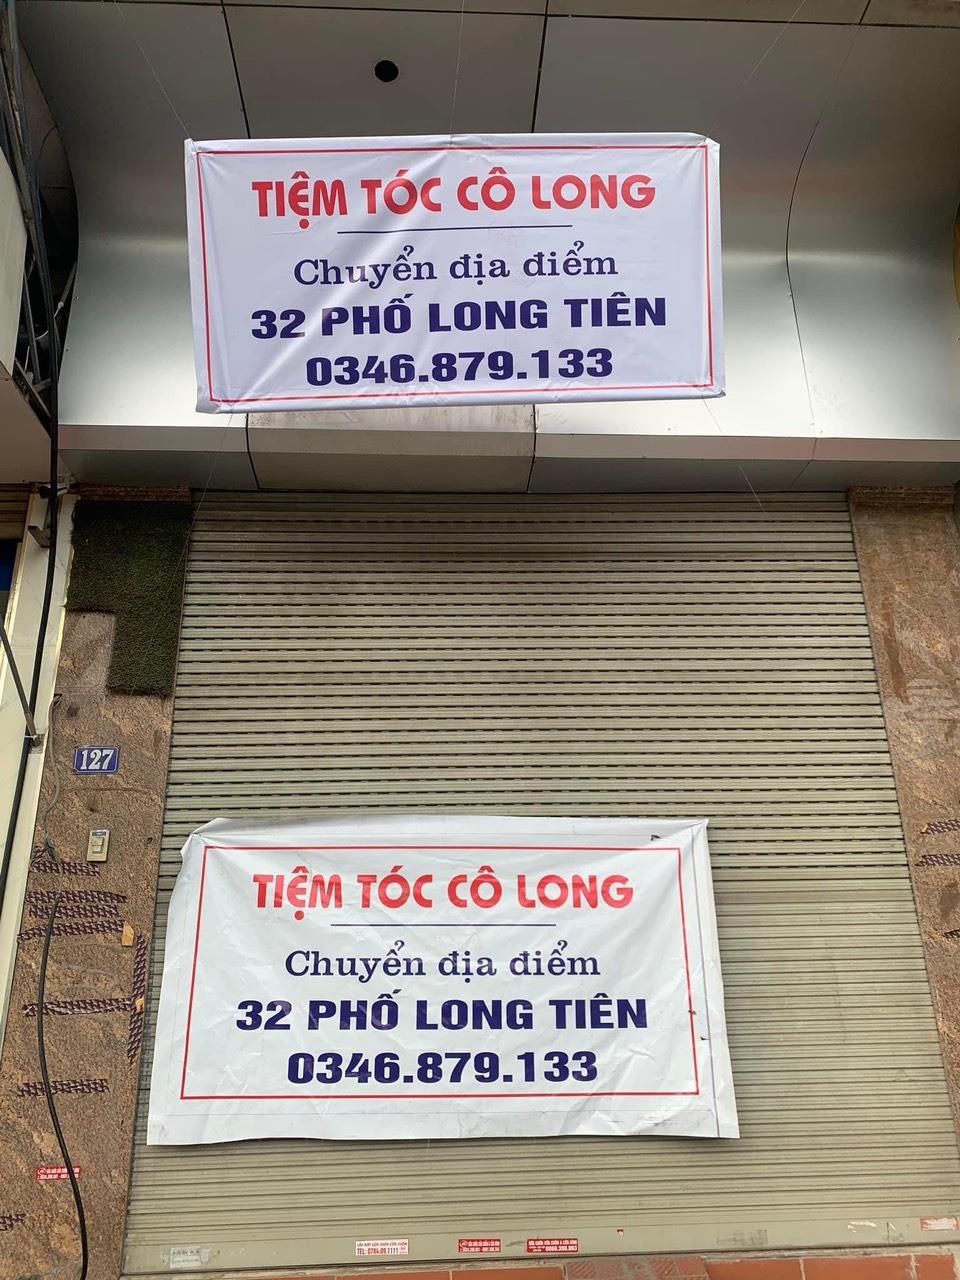 Chính chủ cần cho thuê nhà 5 tầng Thuộc 127 Nguyễn Văn Cừ - Hồng Hải - Hạ Long - Quảng Ninh709217